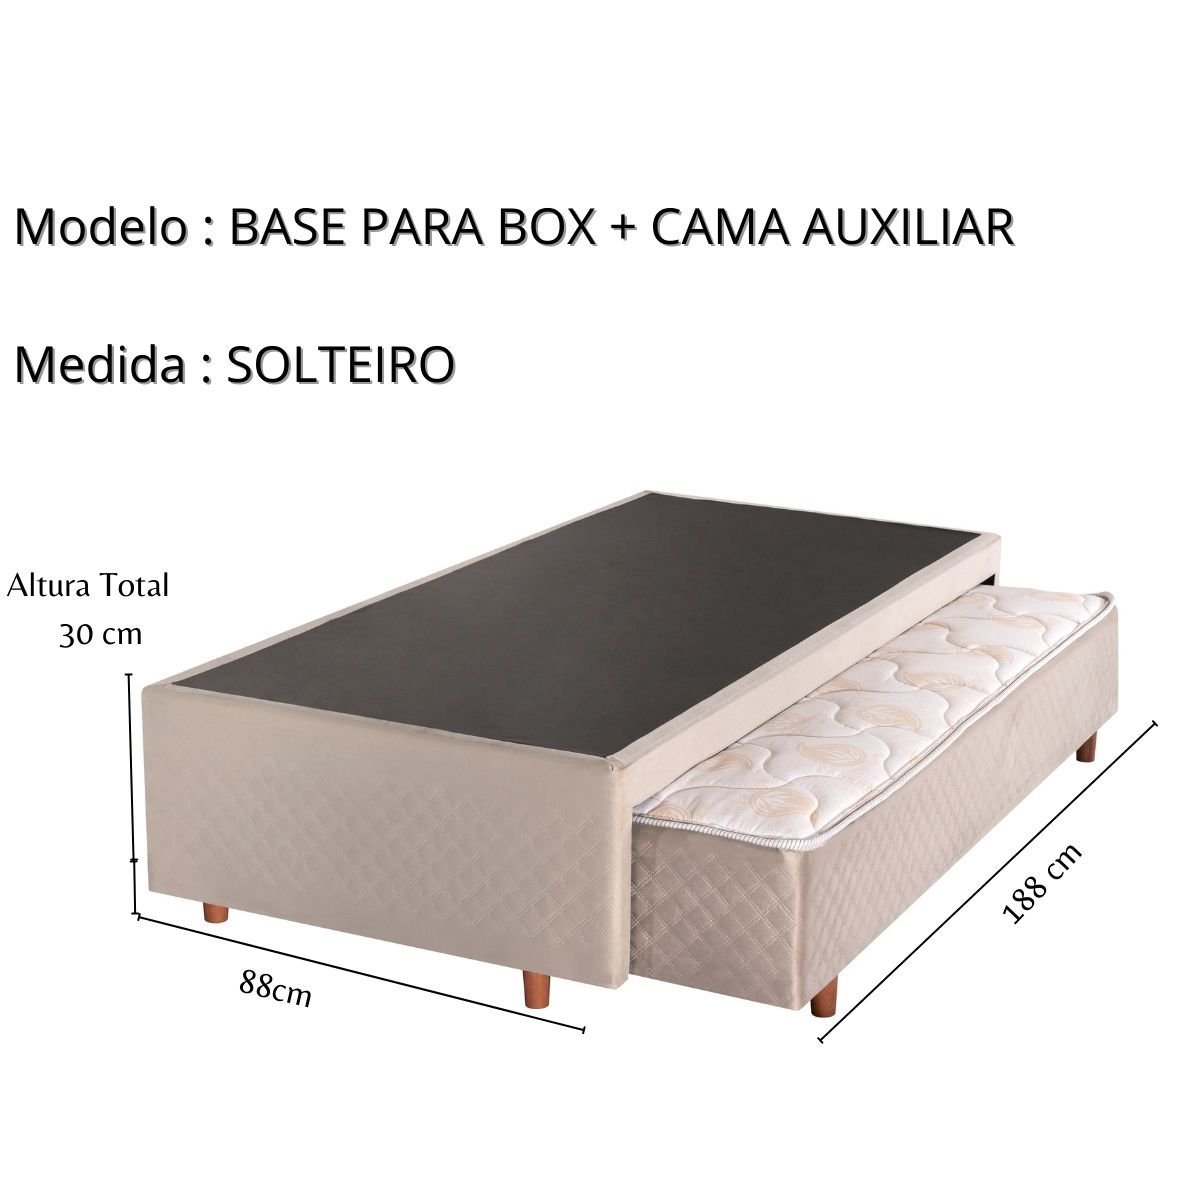 Base Box + Cama Auxiliar com Colchão de Espuma Solteiro 88x188x24cm Bege Cristalflex - 2